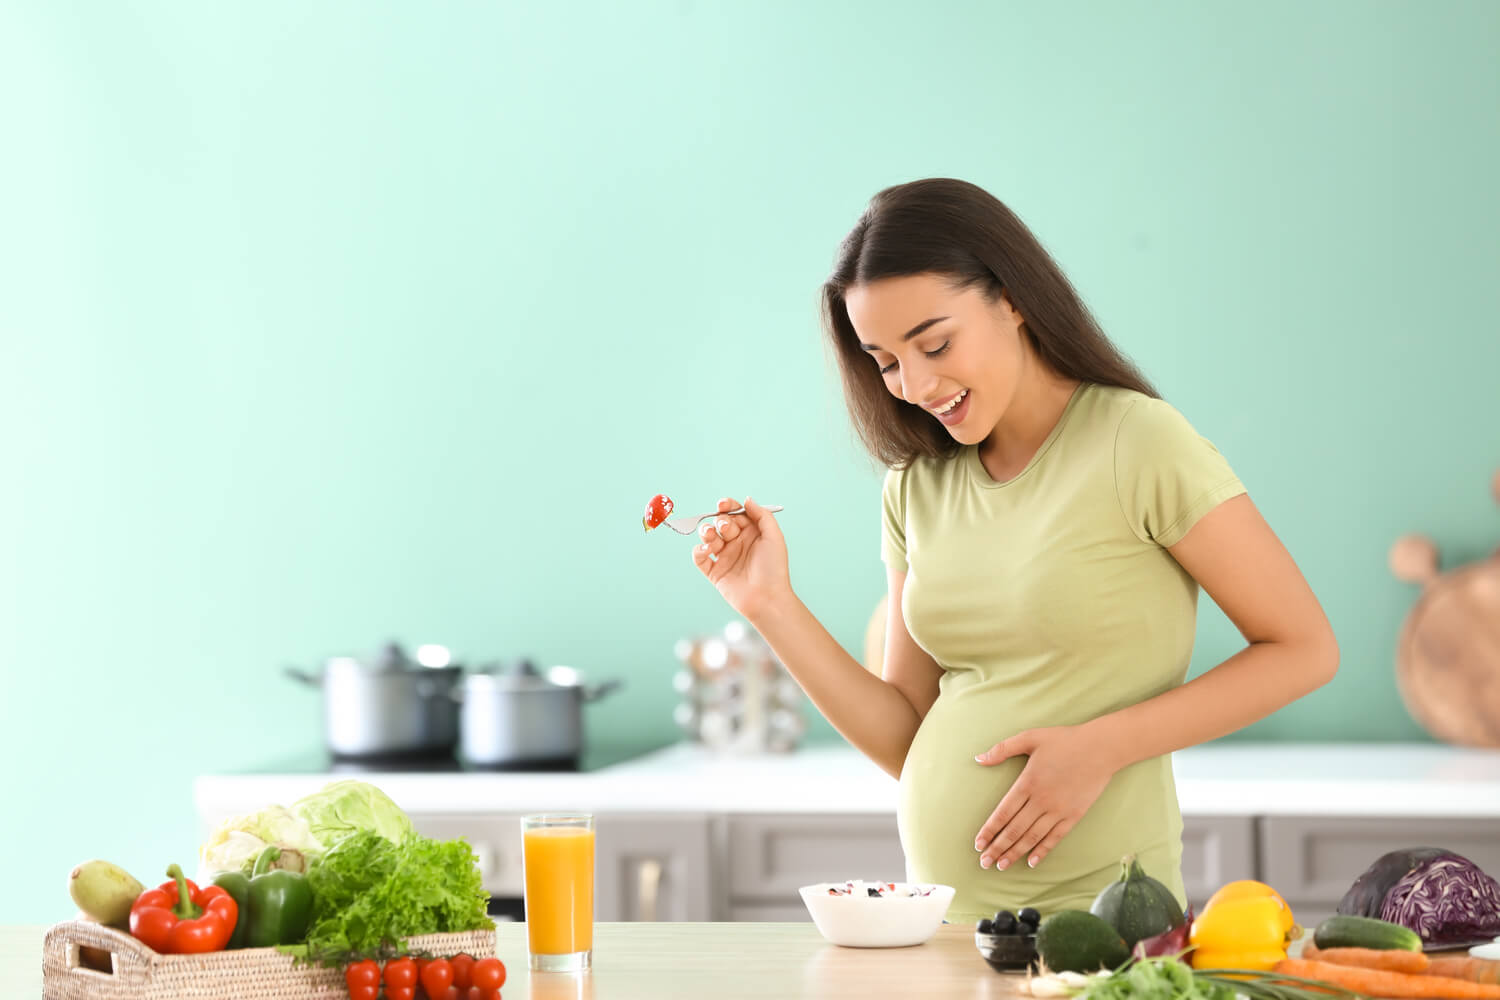 healthy diet - to prevent stillbirth